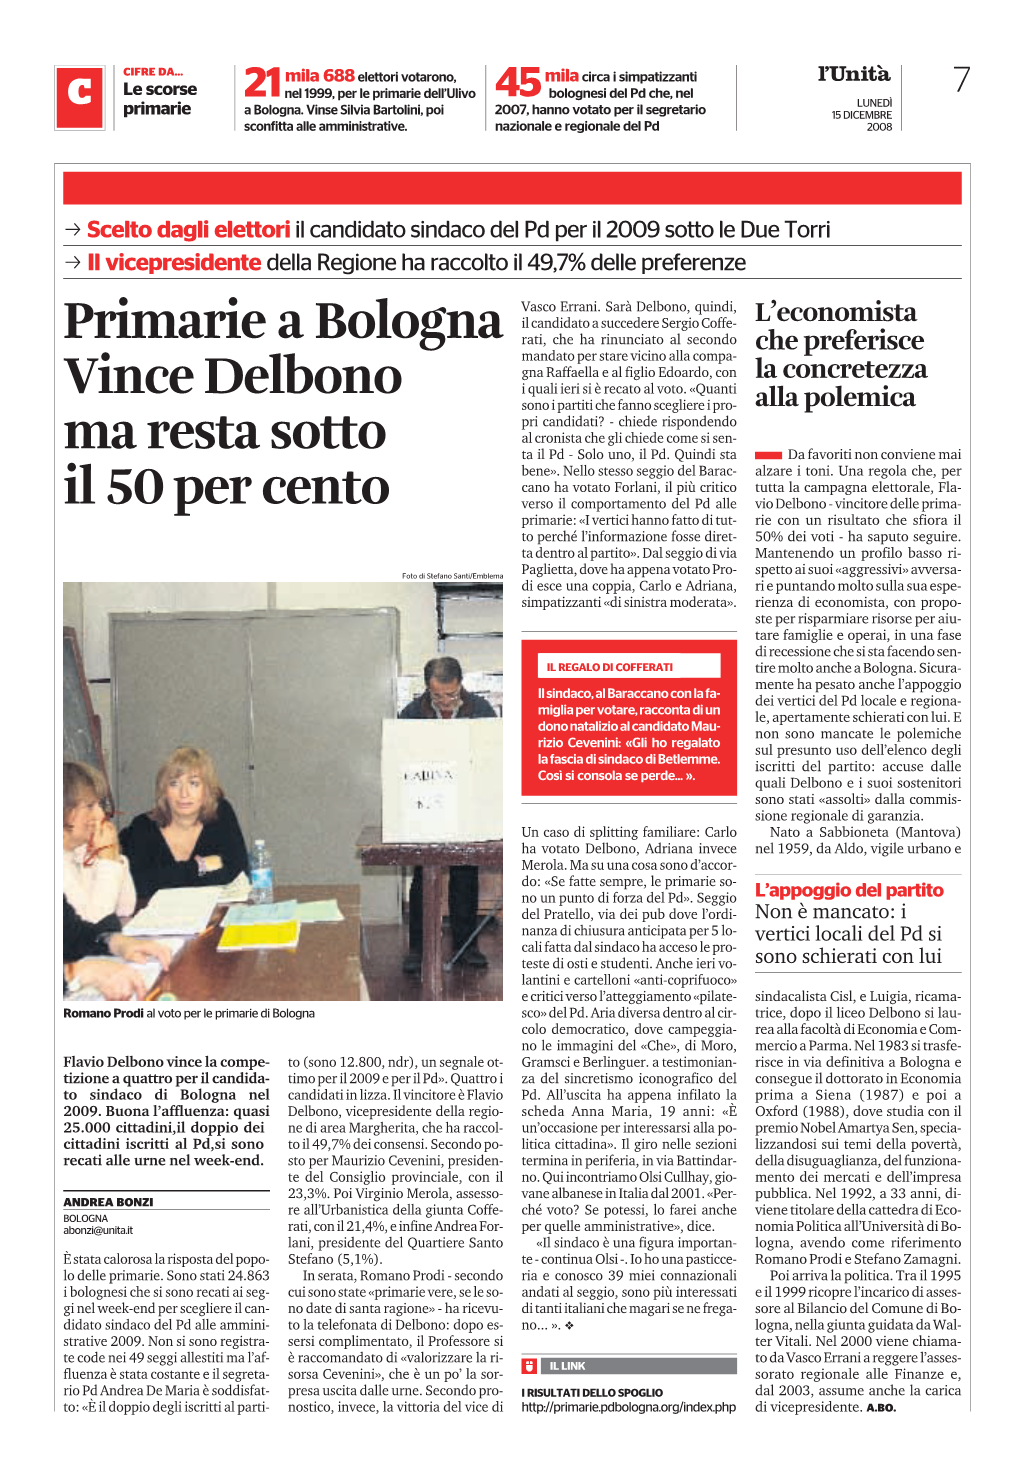 Primarie a Bologna Vince Delbono Ma Resta Sotto Il 50 Per Cento